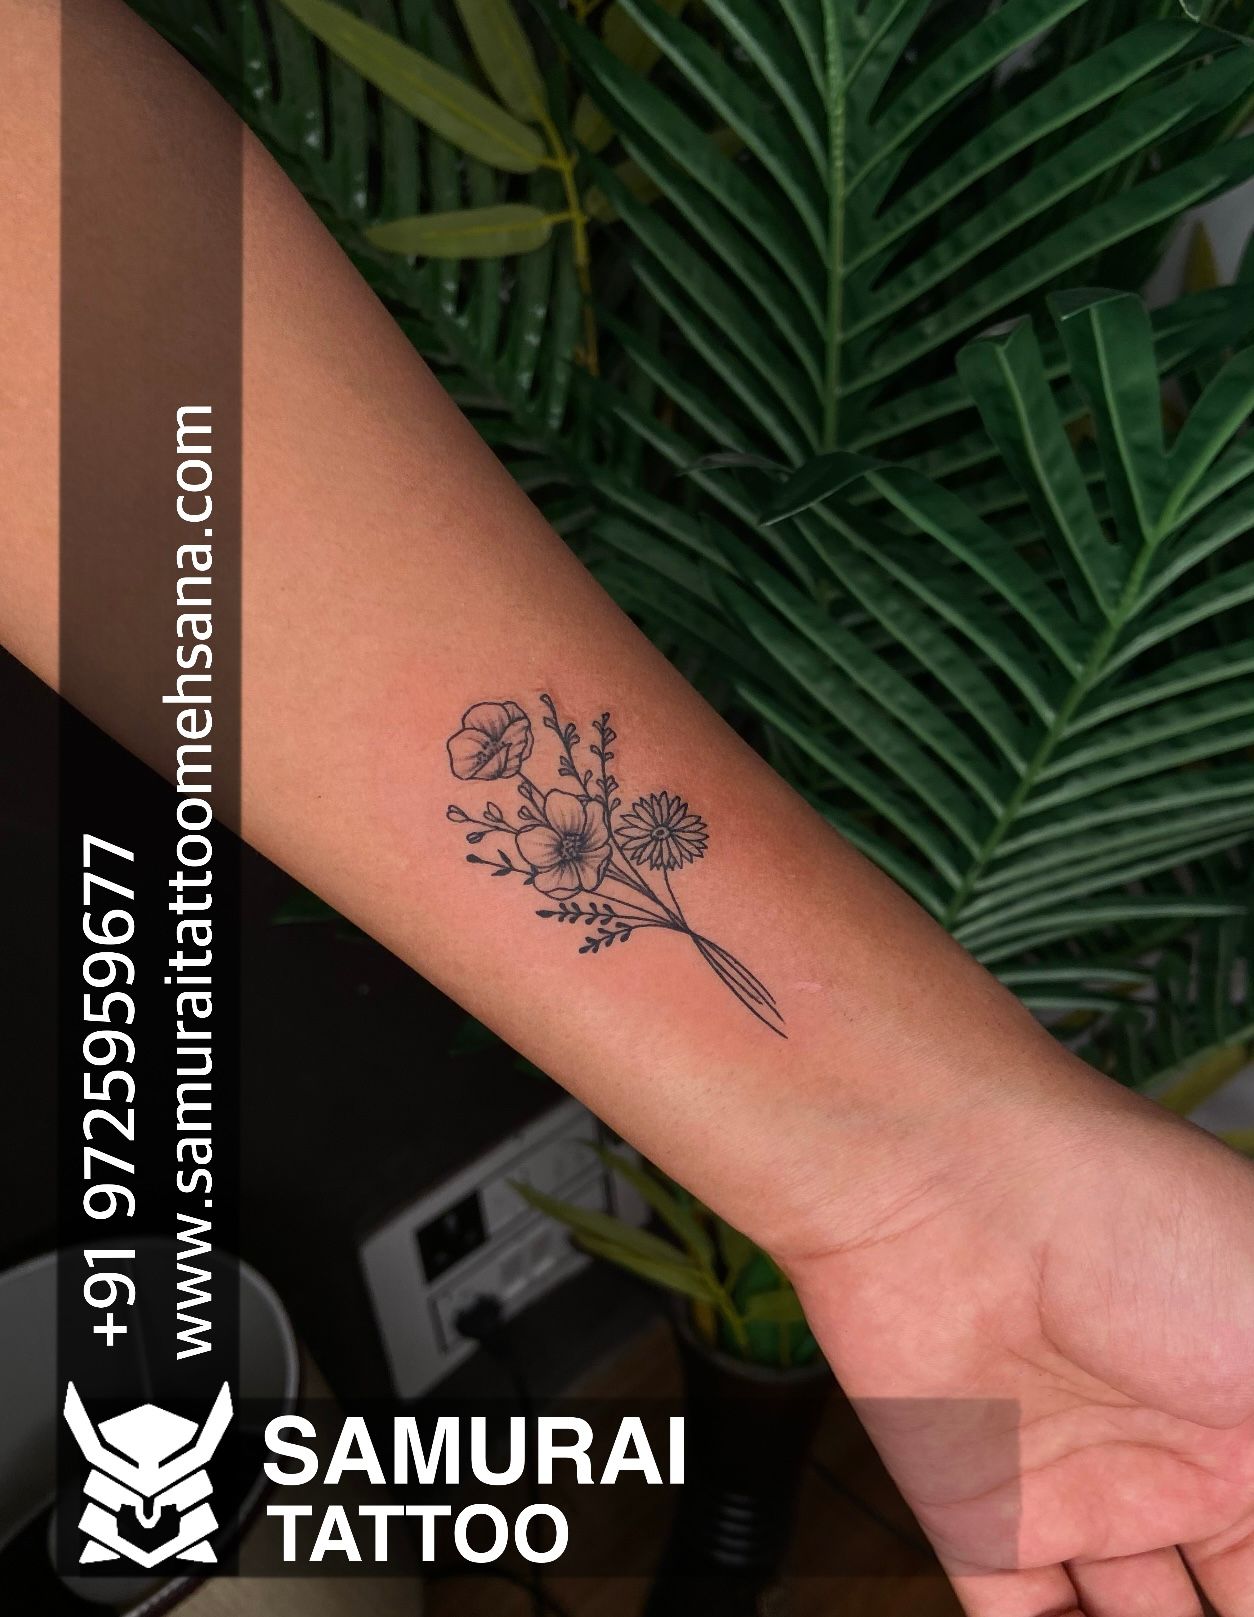 50 Most Beautiful Flower Tattoos For Girls 2023  Best Flower Tattoo  Design Ideas  Women Tattoos  YouTube